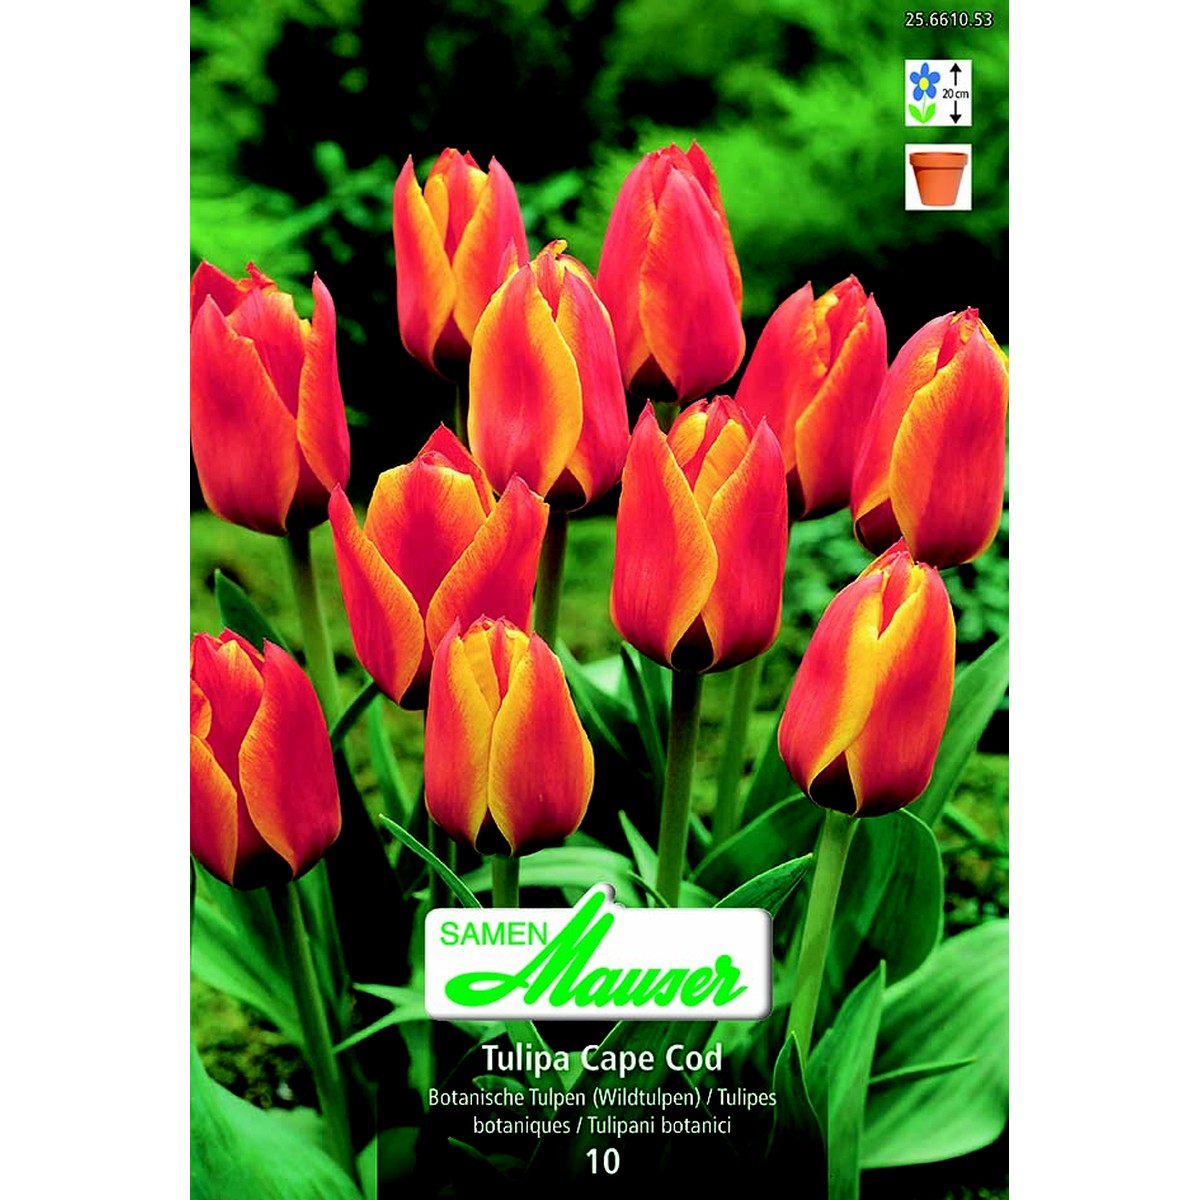   Tulipe botanique Cape Cod  12/